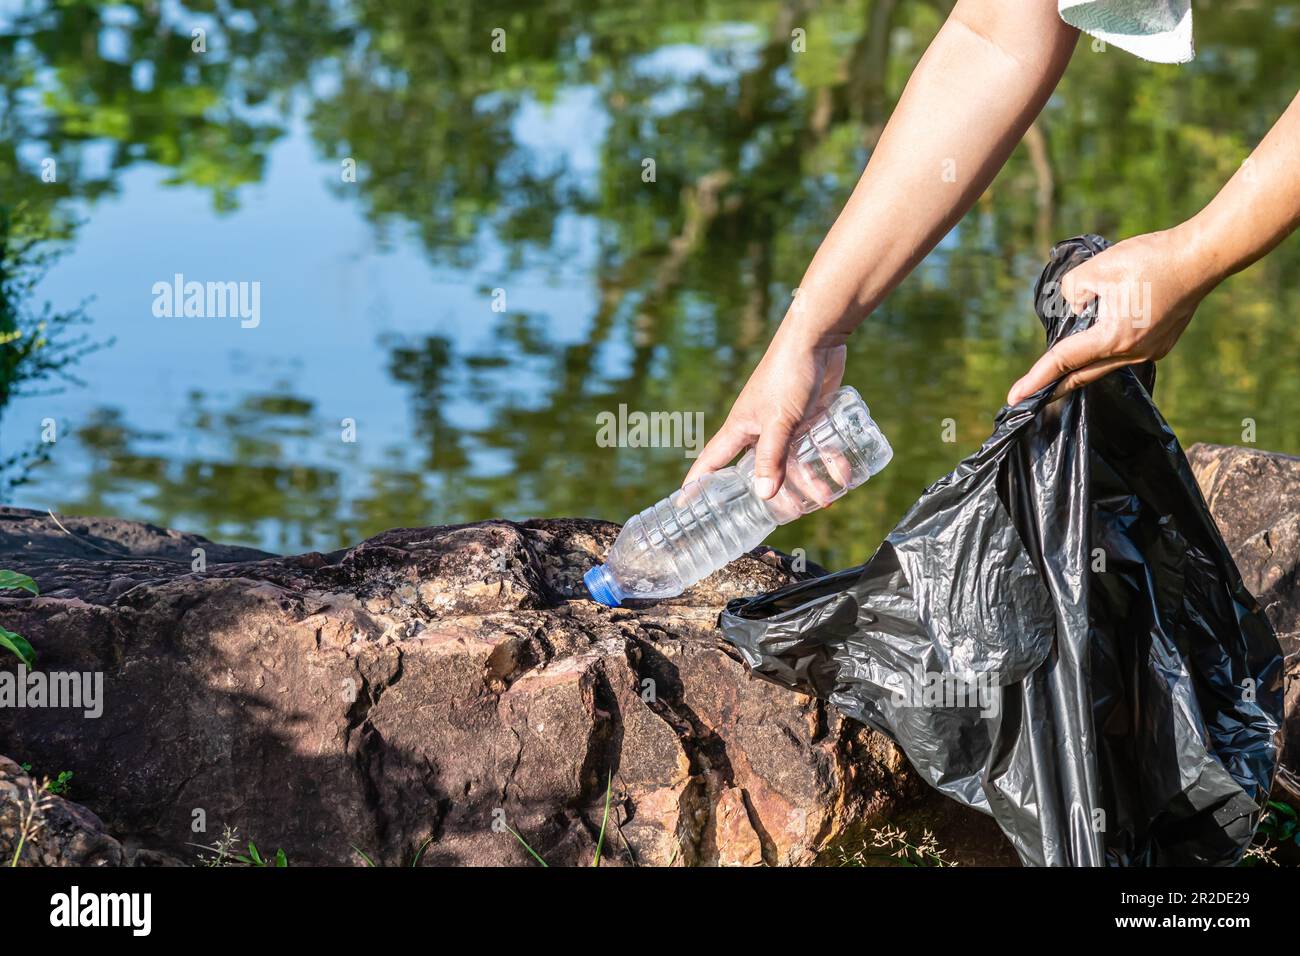 Eine Frau putzt, indem sie Plastikflaschen an einem natürlichen Wasserreservoir aufnimmt. Konzept des Umweltschutzes, der Rettung der Welt, des Recyclings, des redu Stockfoto